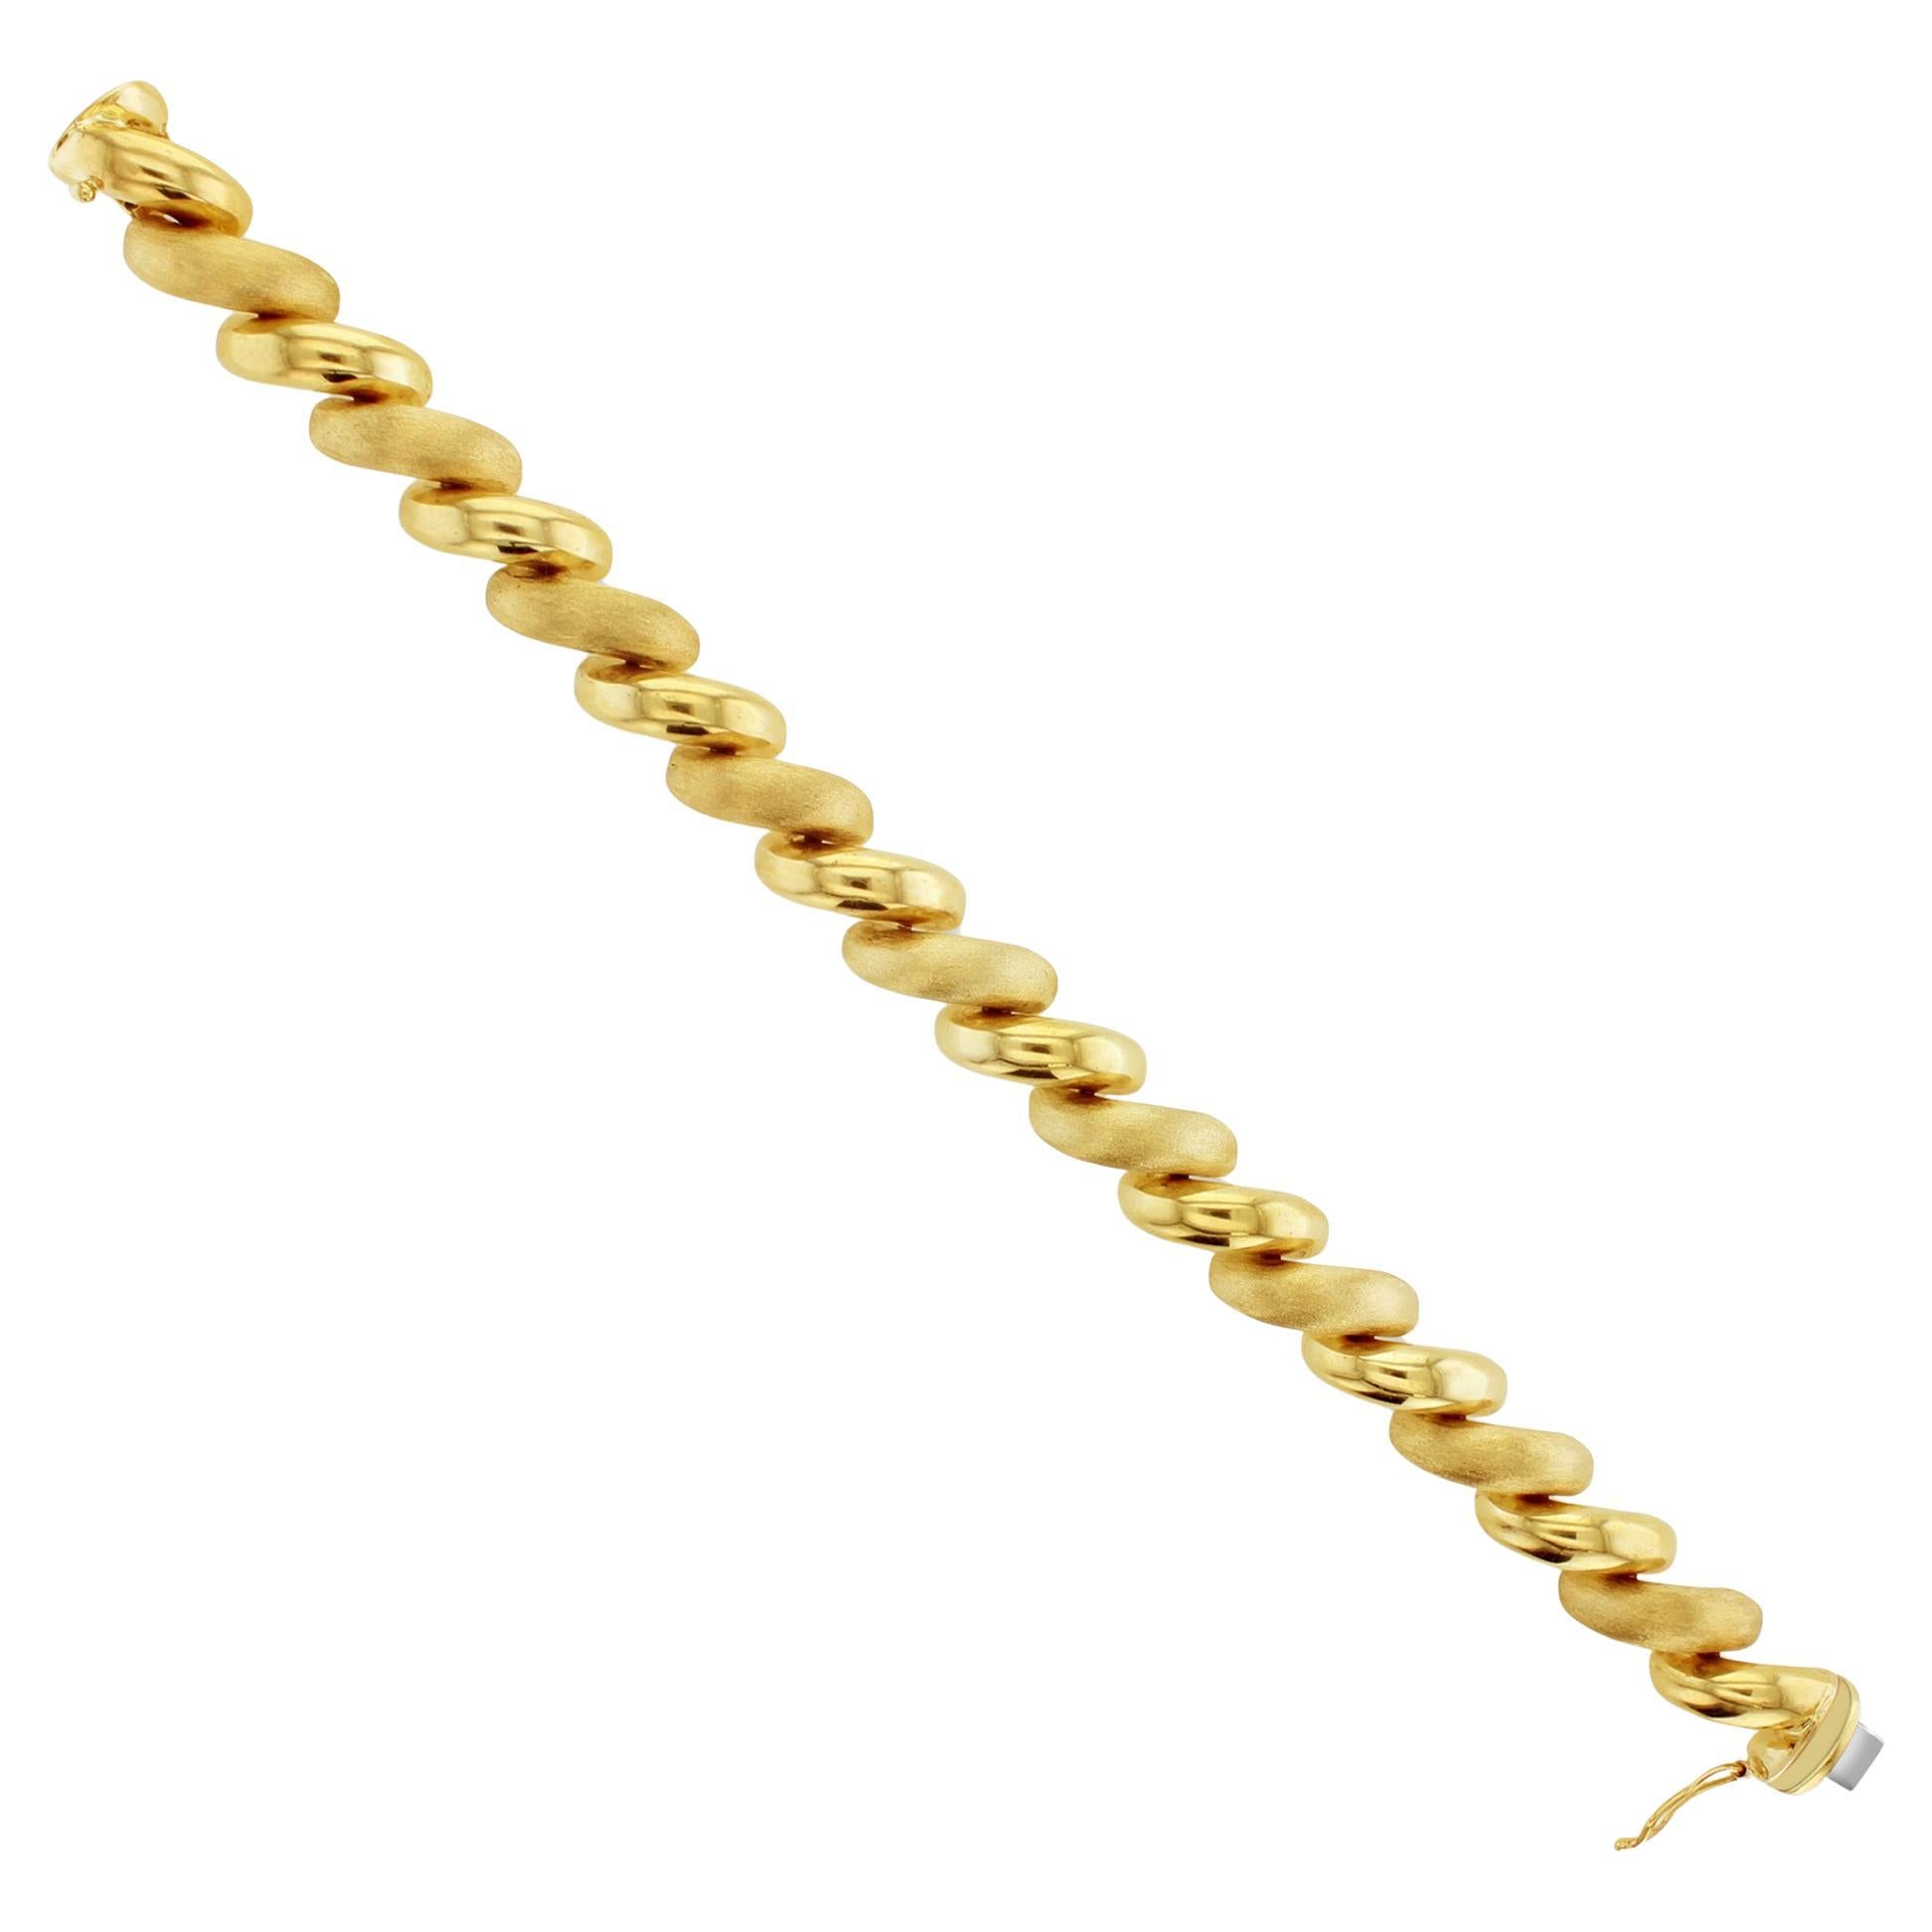 San Marco Gold Gliederkette-Armband mit gemischter Oberfläche 14k Gelbgold